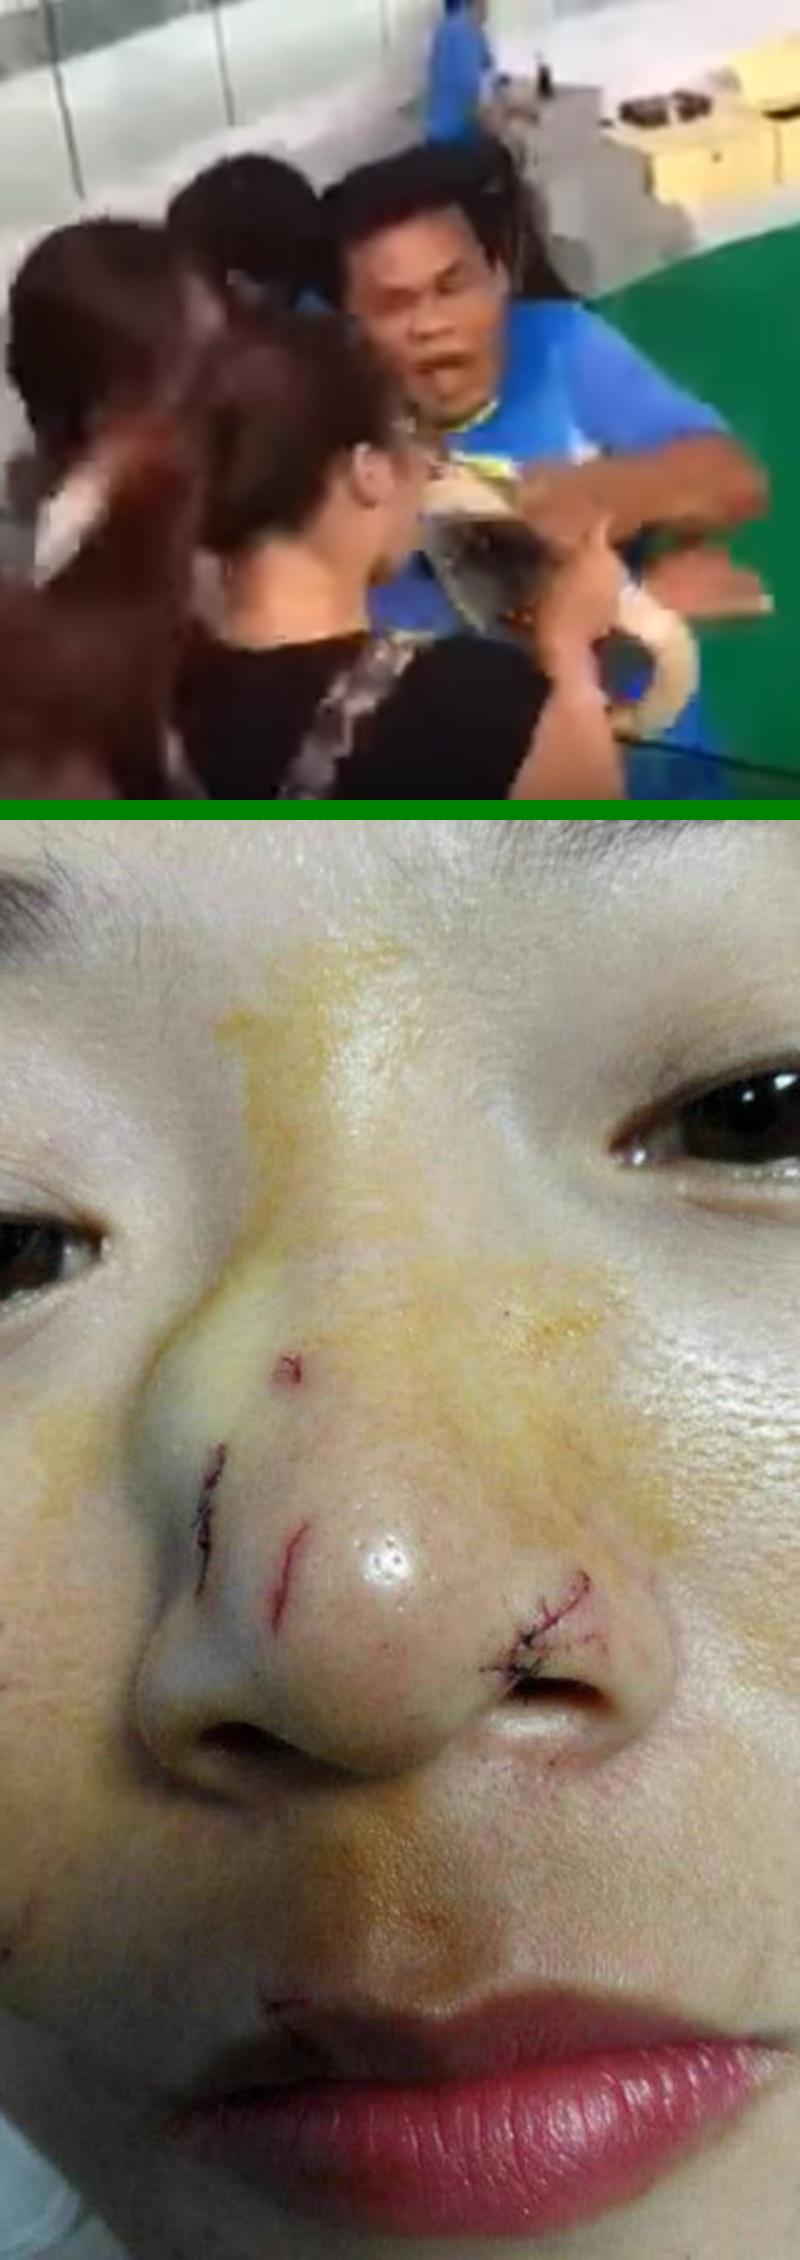 Chinesische Touristin während einer Show auf Phuket von Python ins Gesicht gebissen